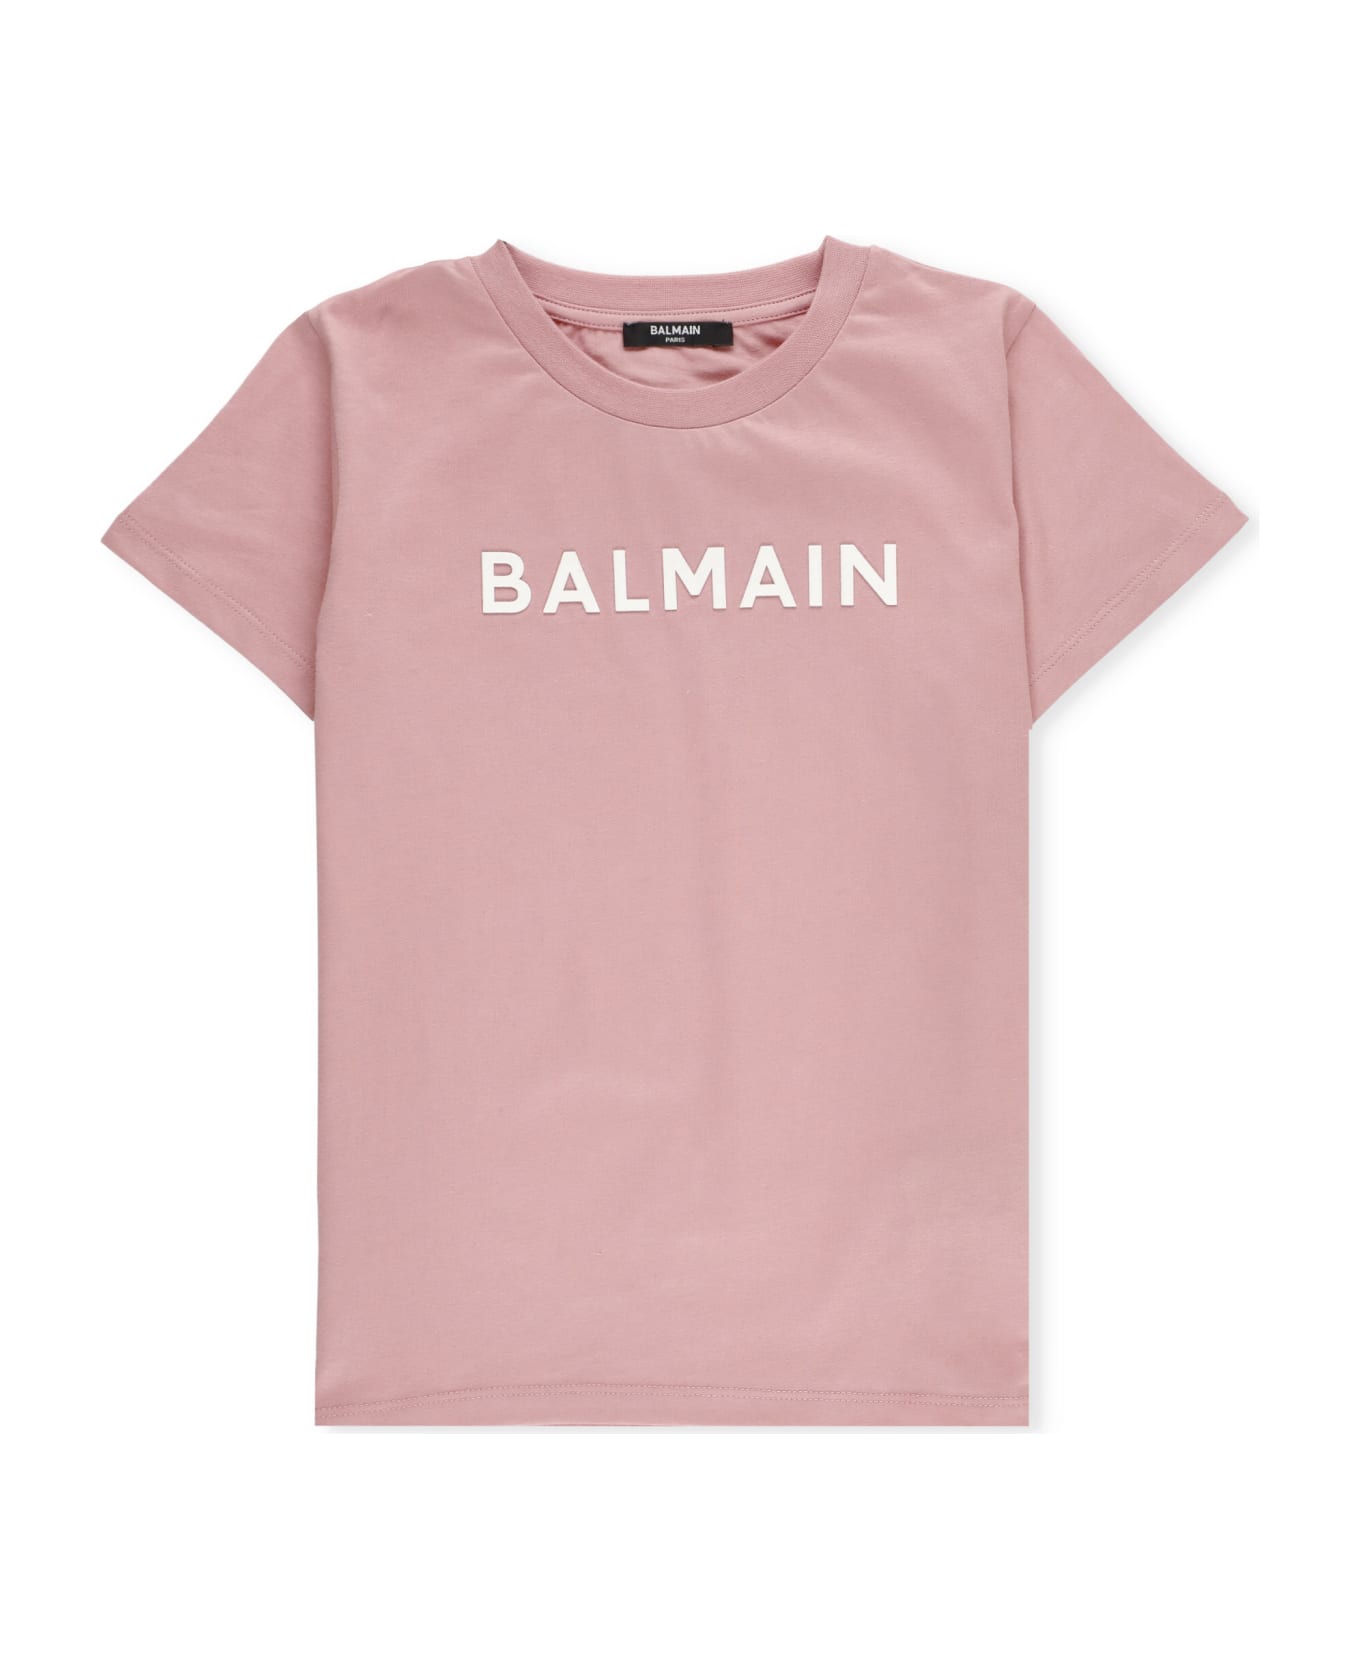 Balmain Logod T-shirt - Pink